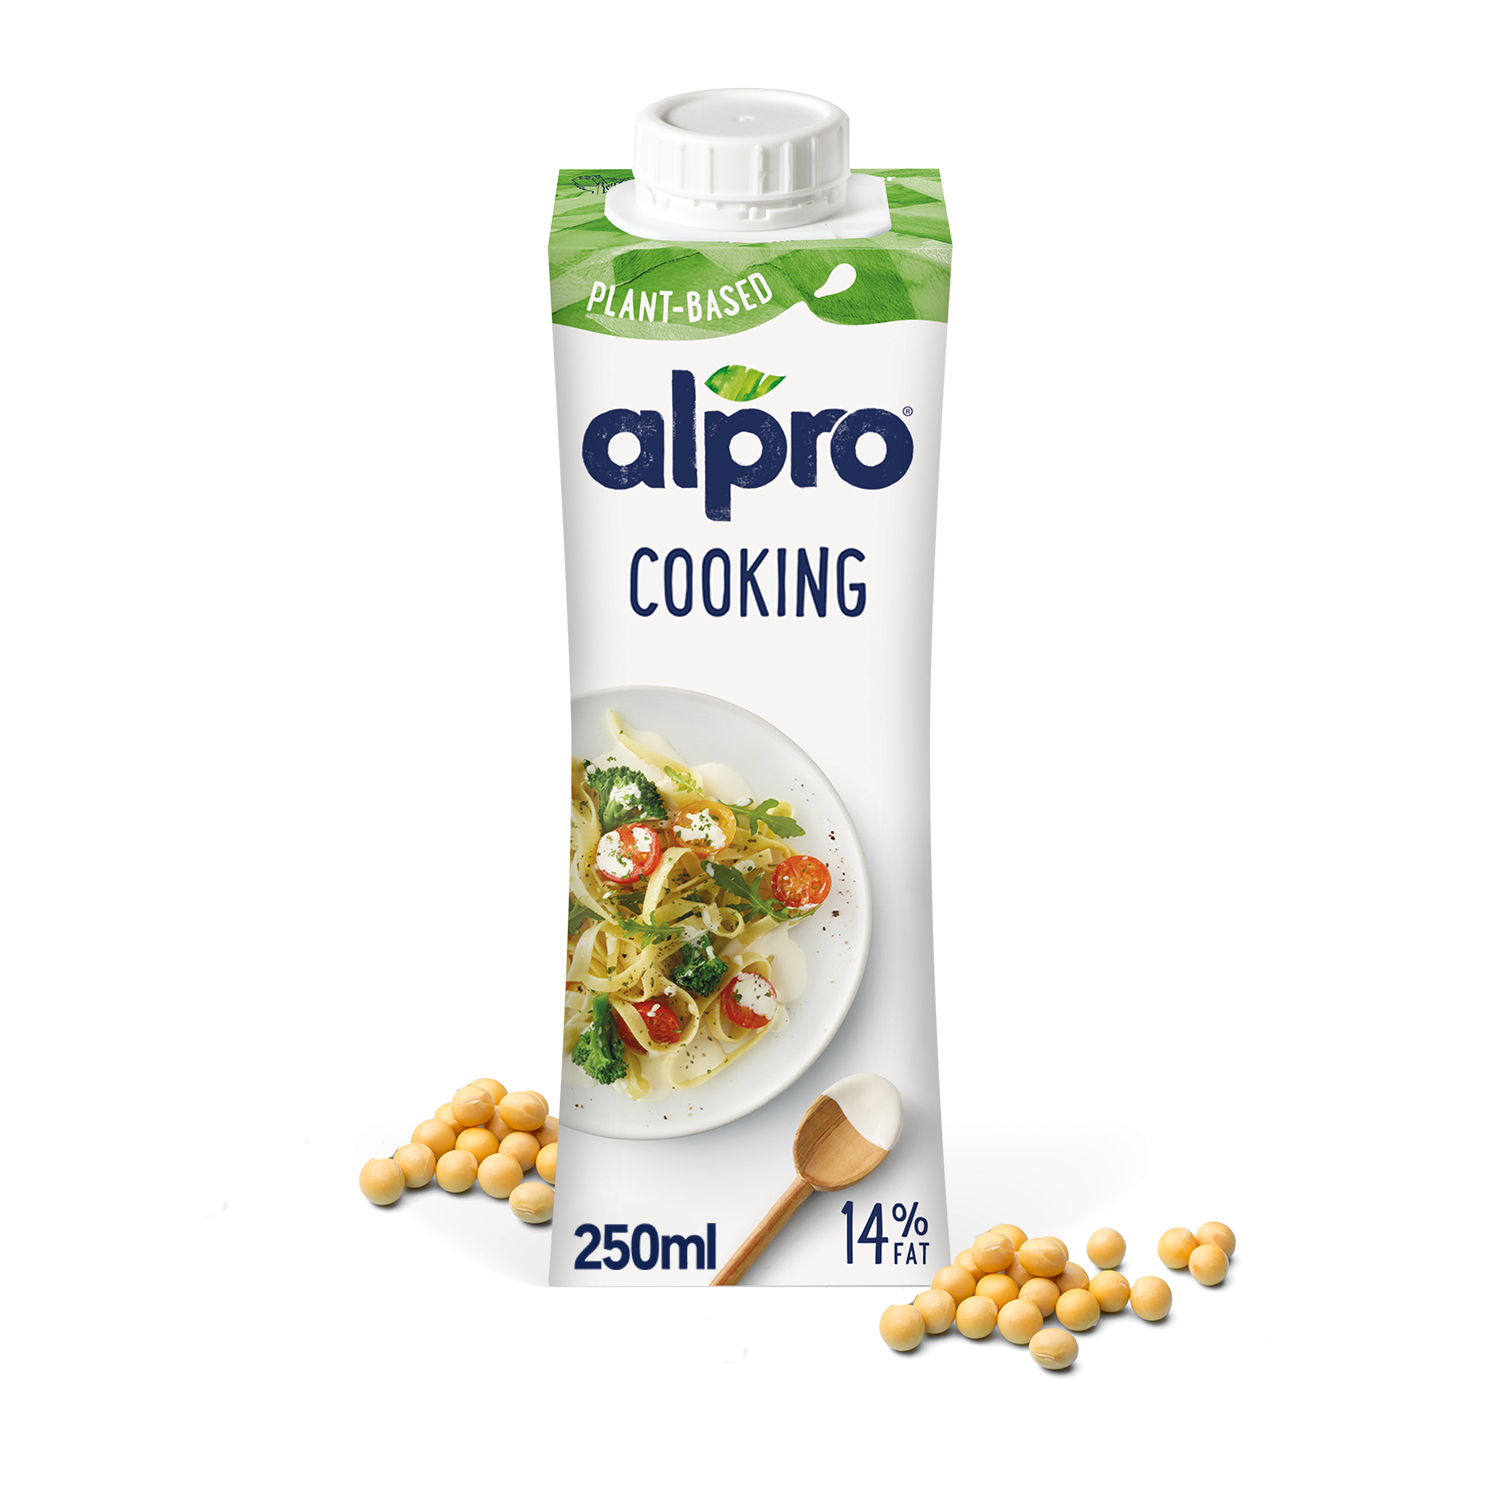 Alpro Cooking - Produkt sojowy do celów kulinarnych 250 ml - sklep